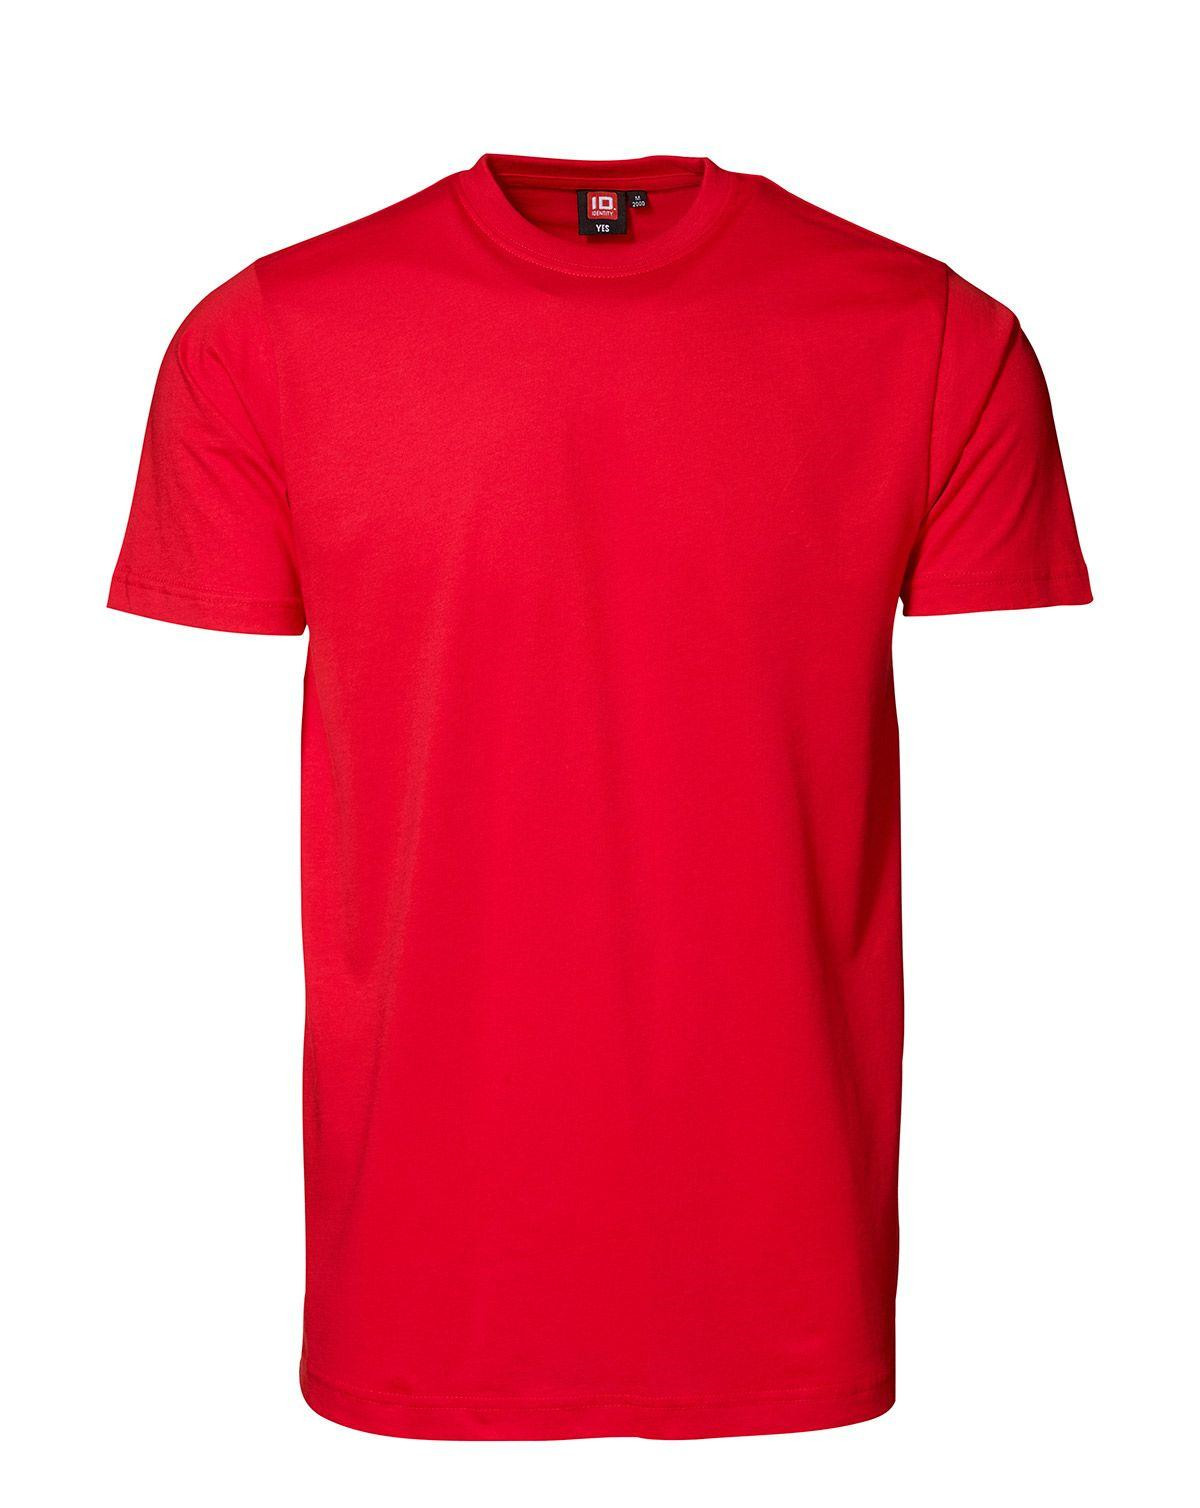 ID YES T-shirt (Rød, L)